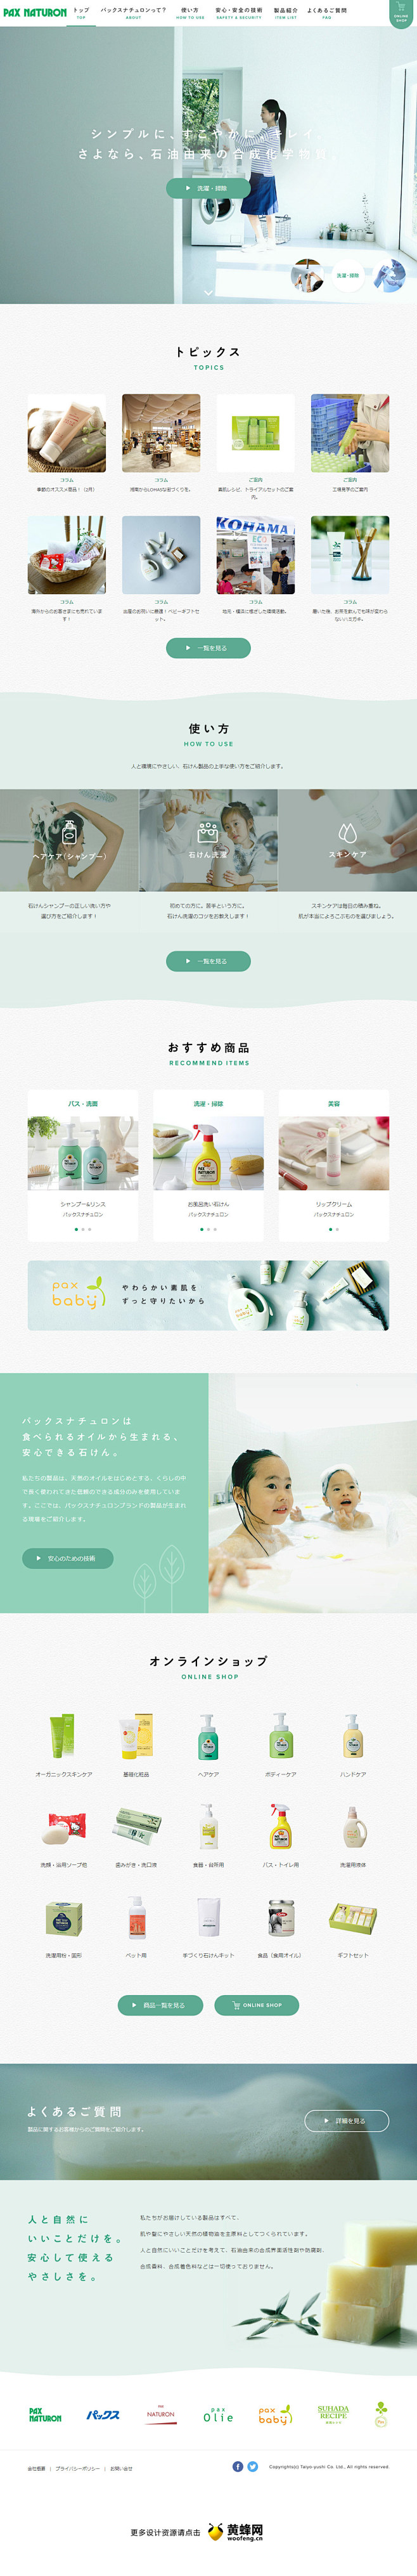 太阳油脂品牌官方网站  |  网页设计 ...